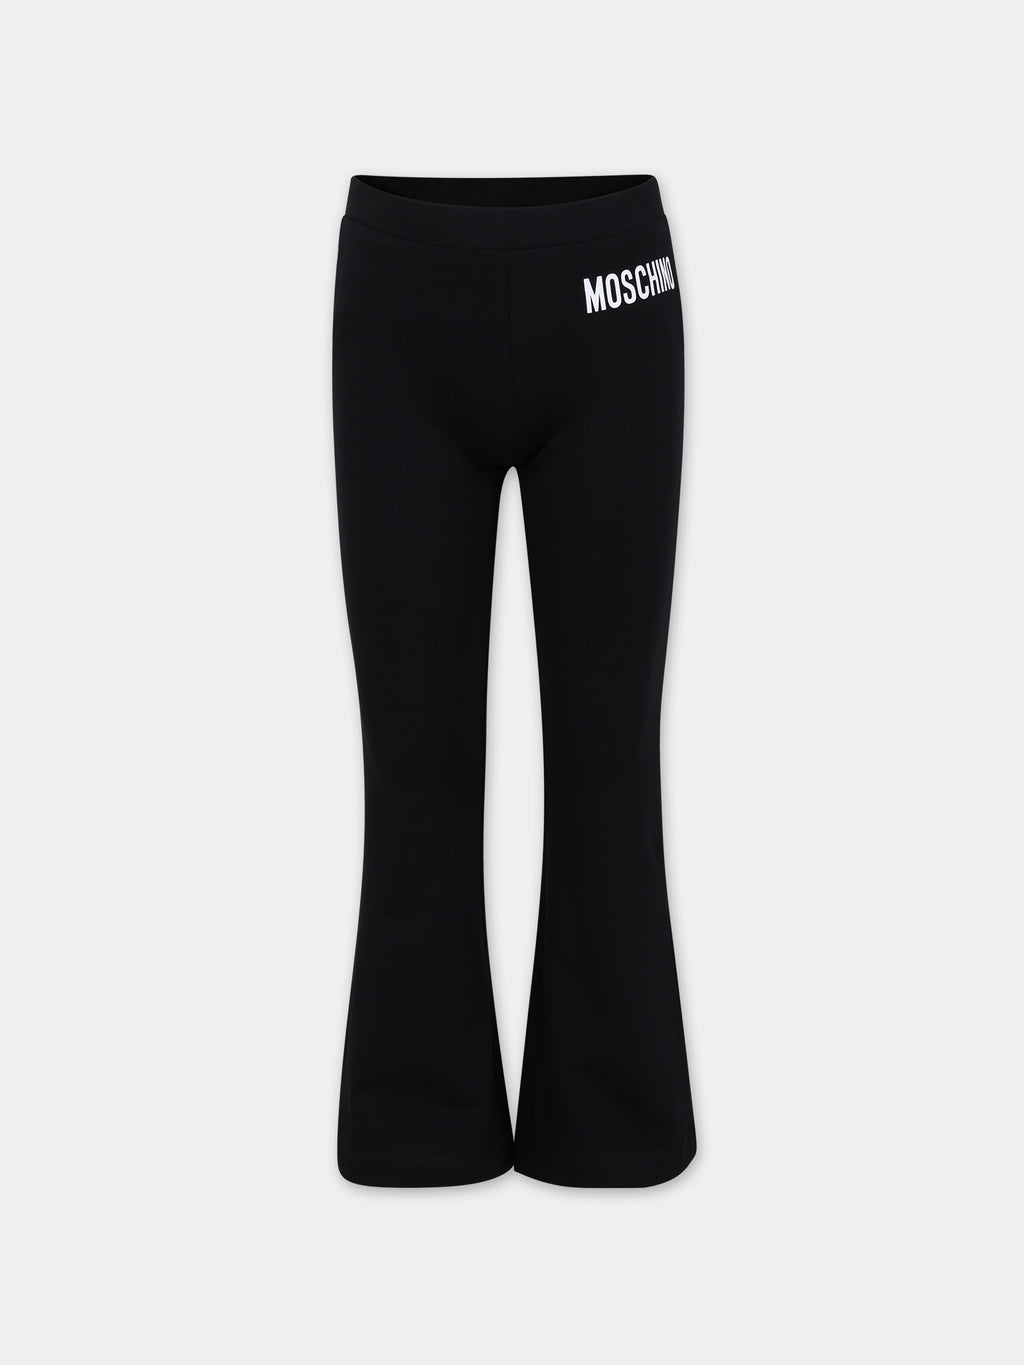 Black leggings for girl with logo